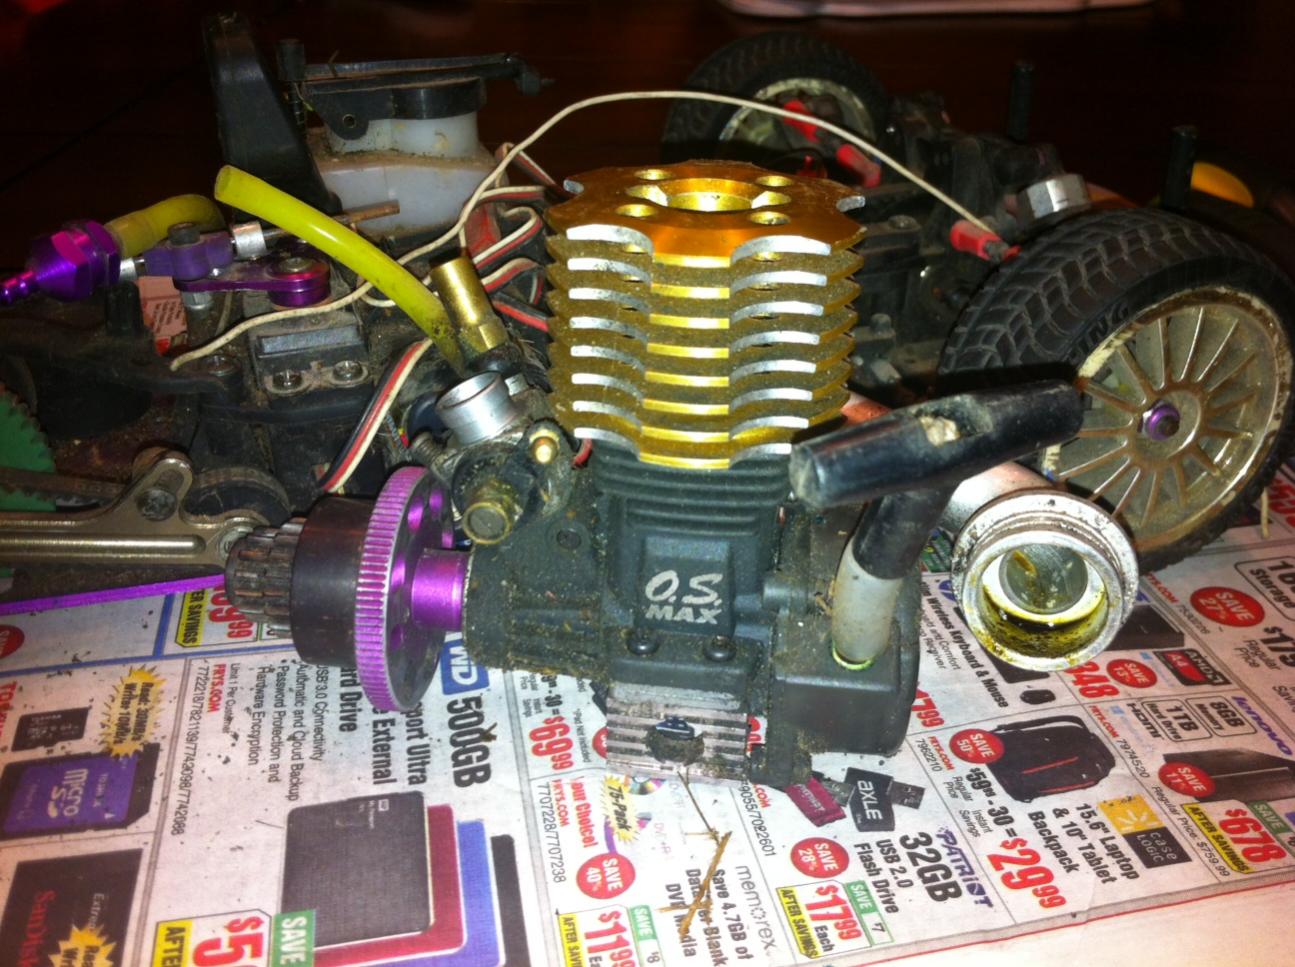 hpi rs4 engine